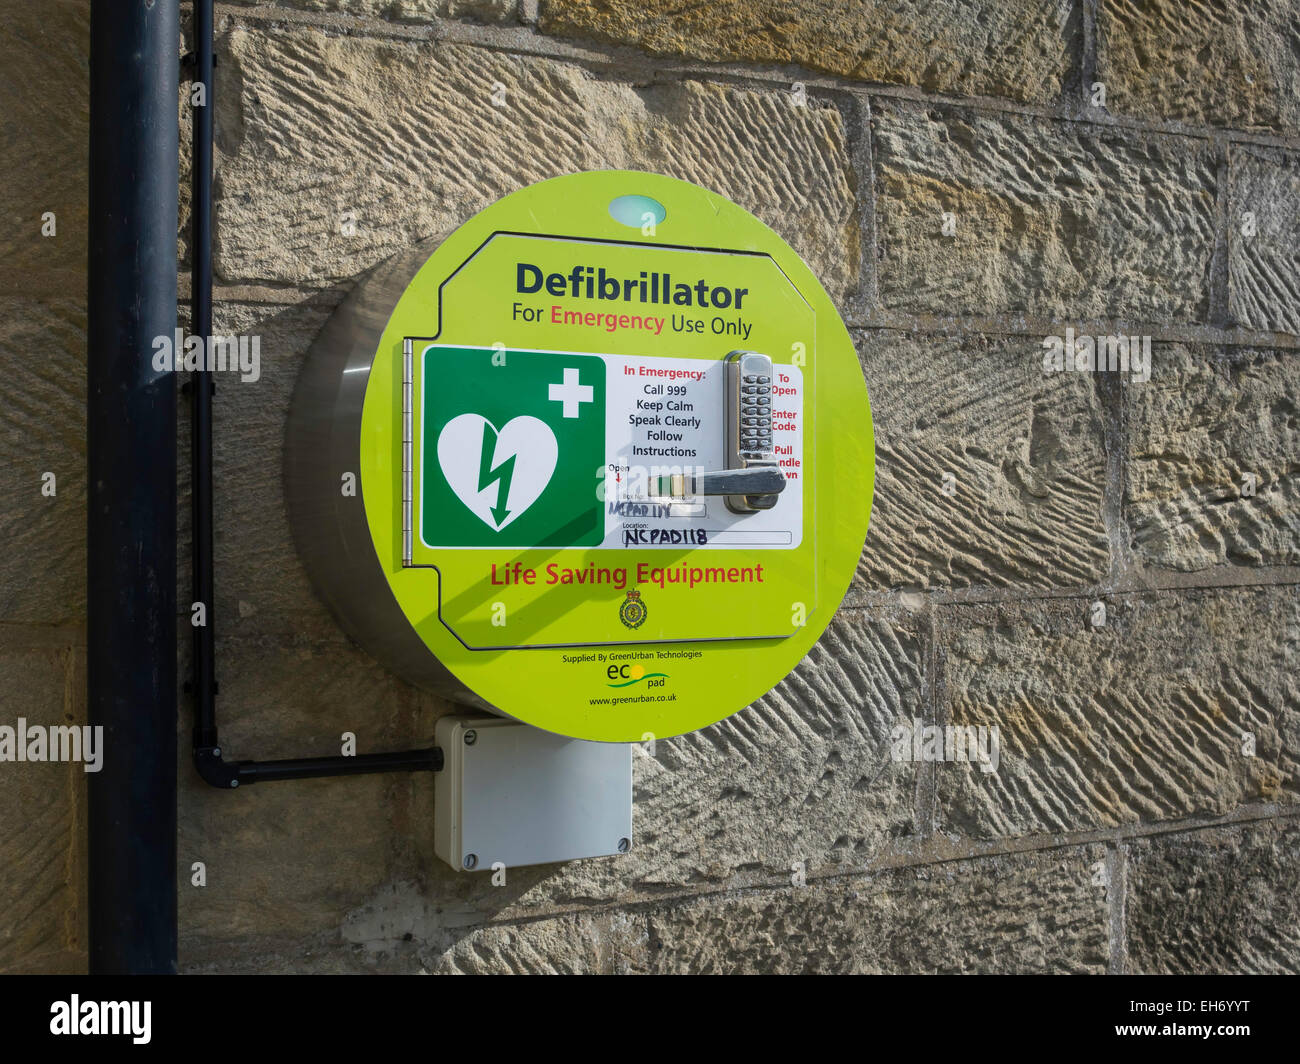 An der Wand befestigte Herz Defibrillator lebensrettende Ausrüstung für Herzstillstand mit Codeschloss für die öffentliche Nutzung. England-UK Stockfoto